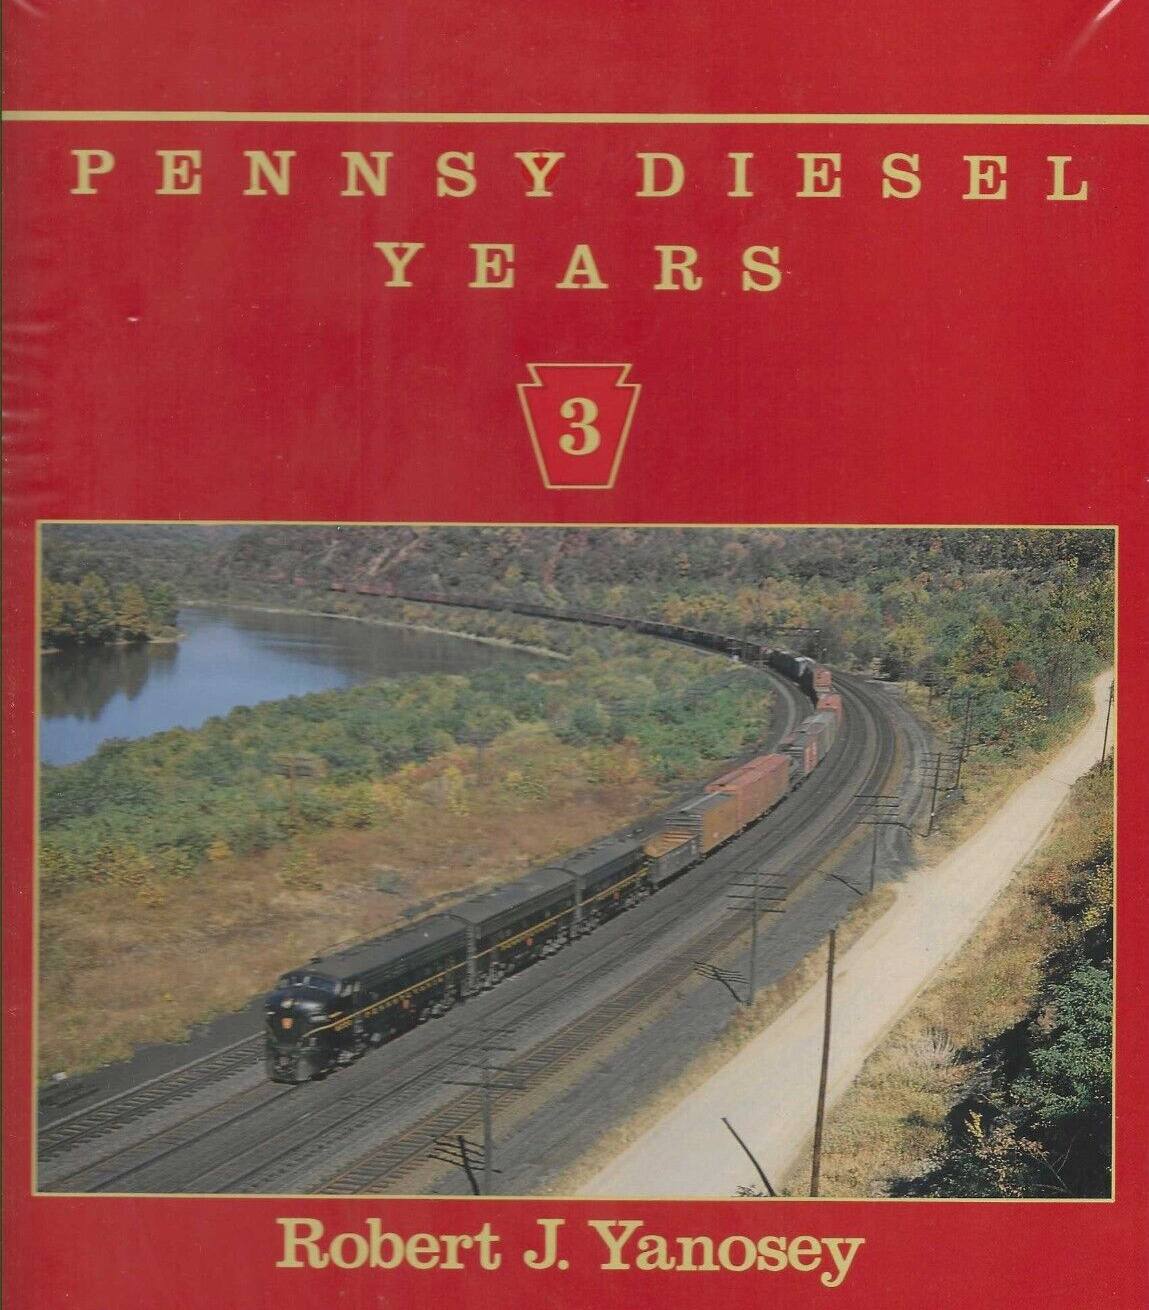 PENNSY DIESEL YEARS, Vol. 3 - (BRAND NEW BOOK)